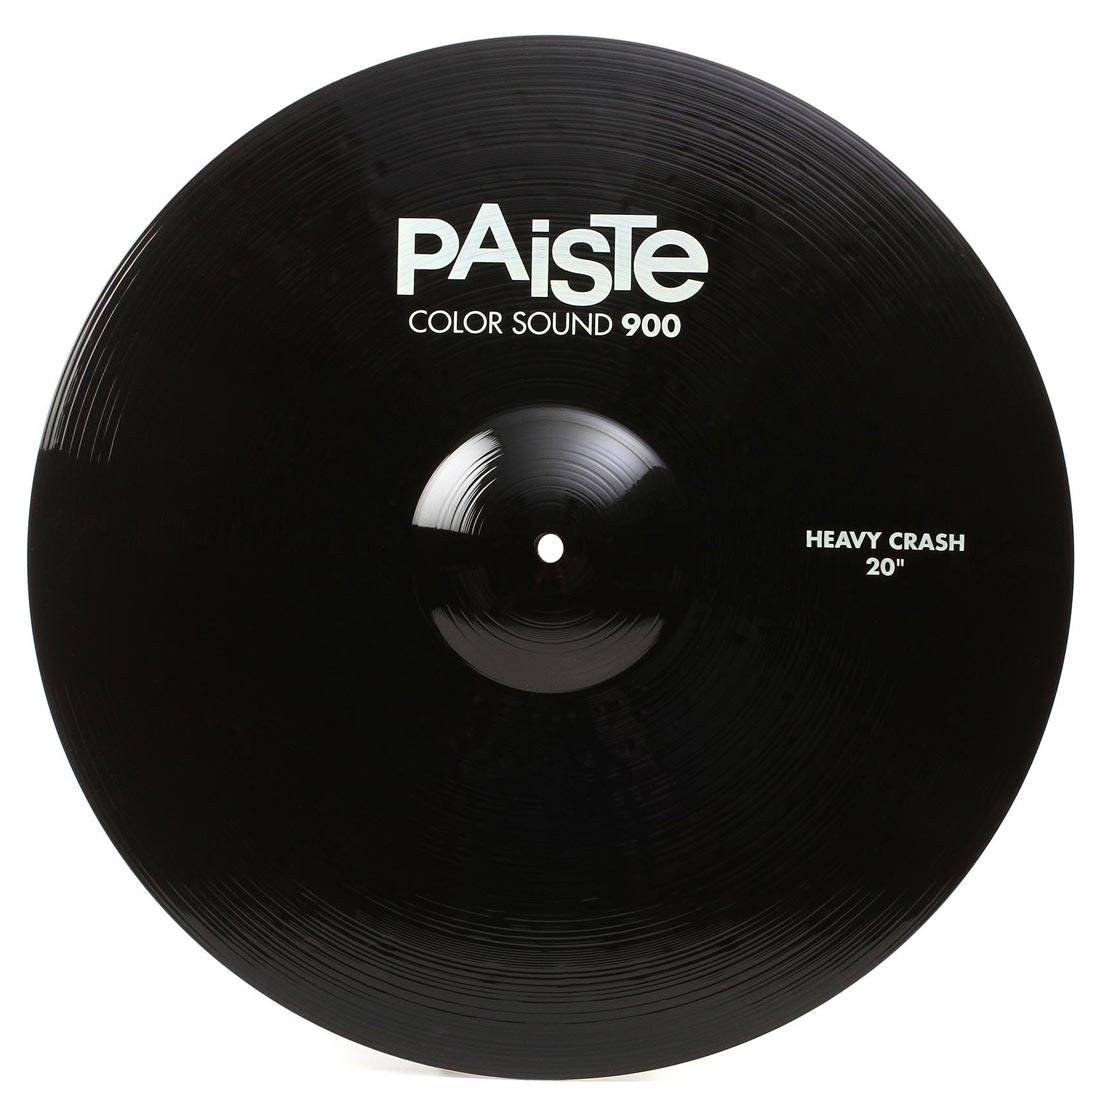 PAISTE 900 Color Sound 20'' Black Heavy Crash Cymbal